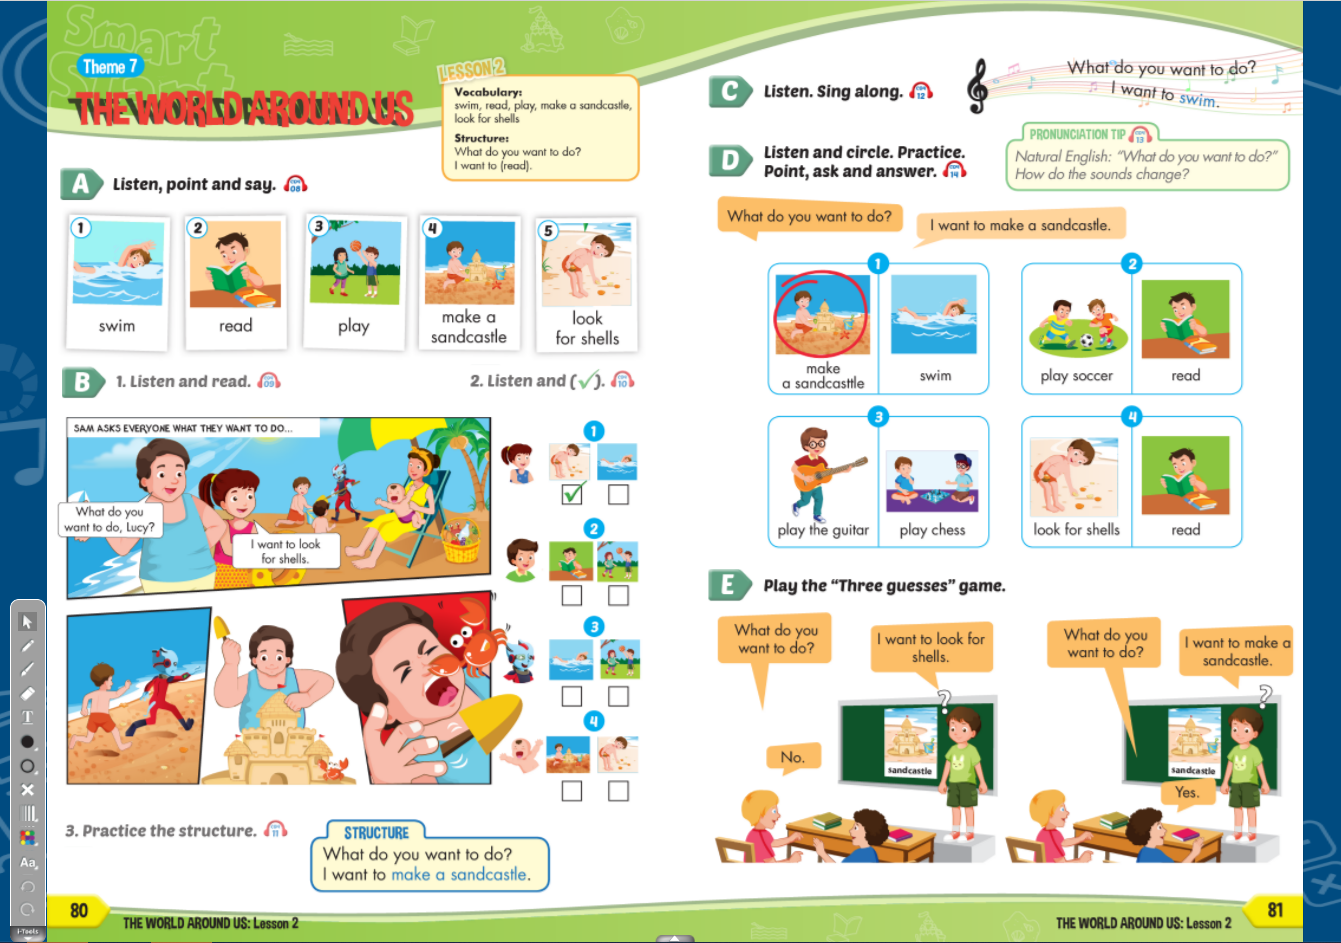 Hình ảnh [APP] i-Learn Smart Start Grade 4 - Ứng dụng phần mềm tương tác sách học sinh